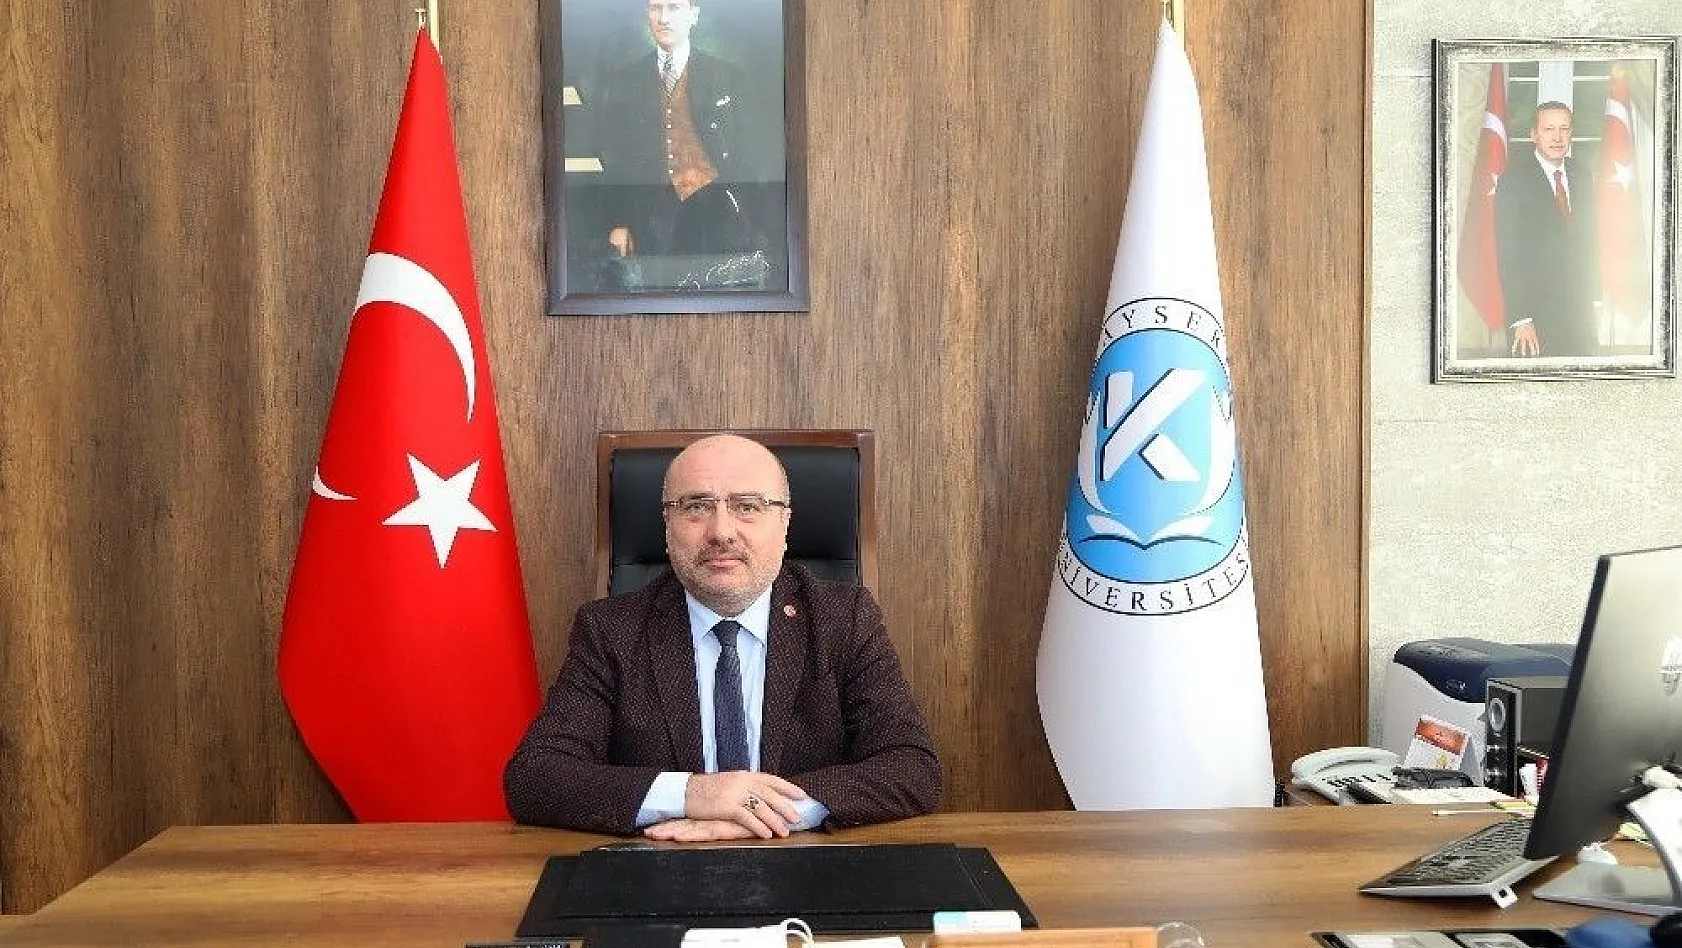 Kayseri Üniversitesi Rektörü Karamustafa'nın, İstiklal Marşı'nın Kabulünün 99. Yıldönümüyle İlgili Mesajı
